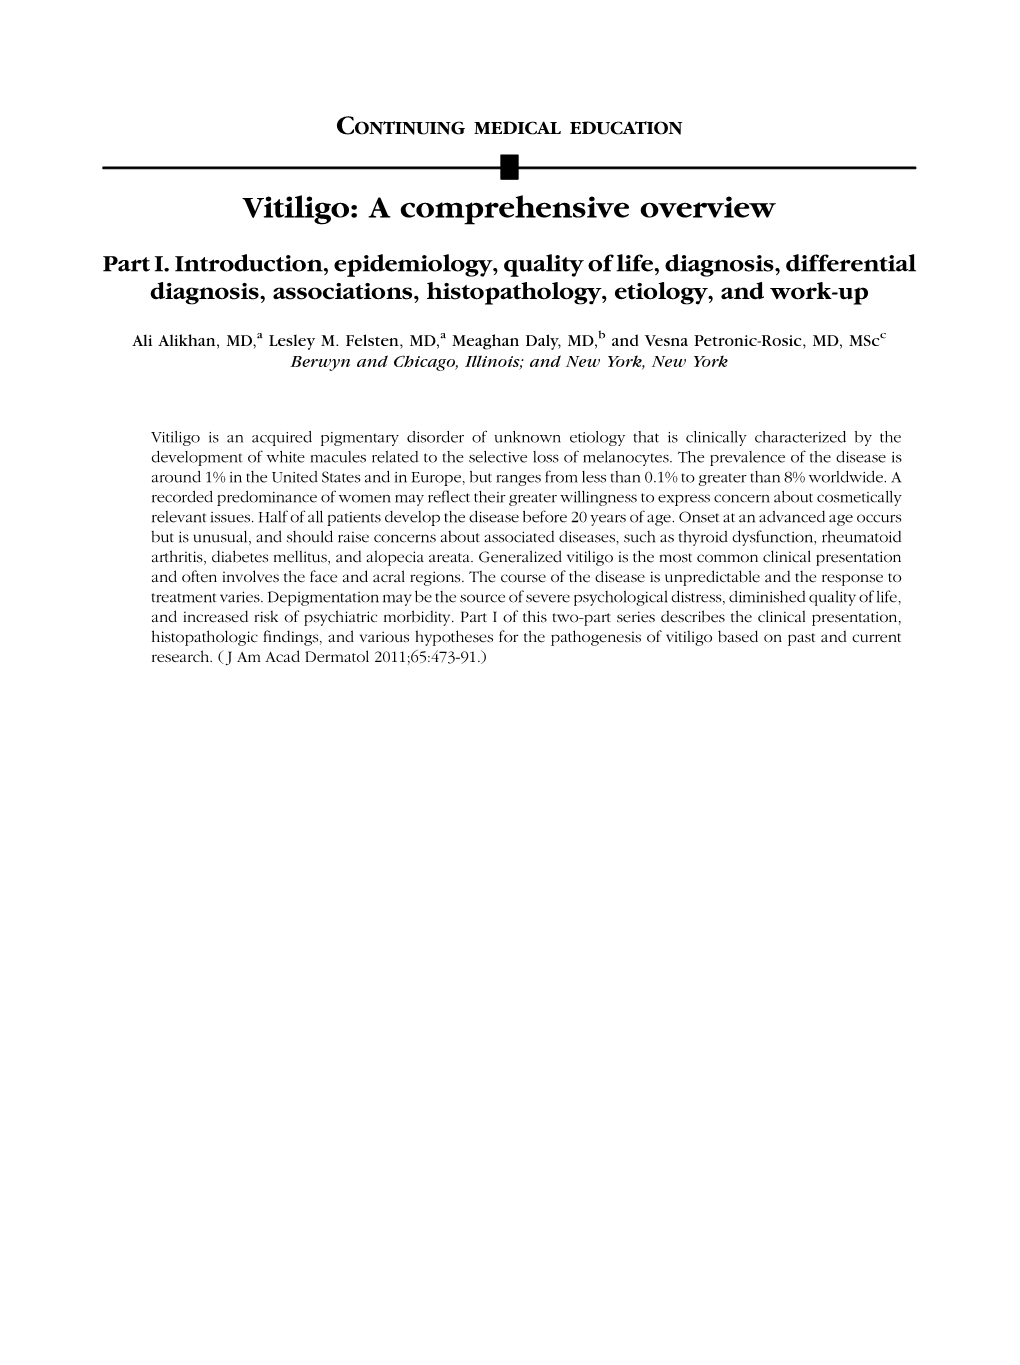 Vitiligo: a Comprehensive Overview